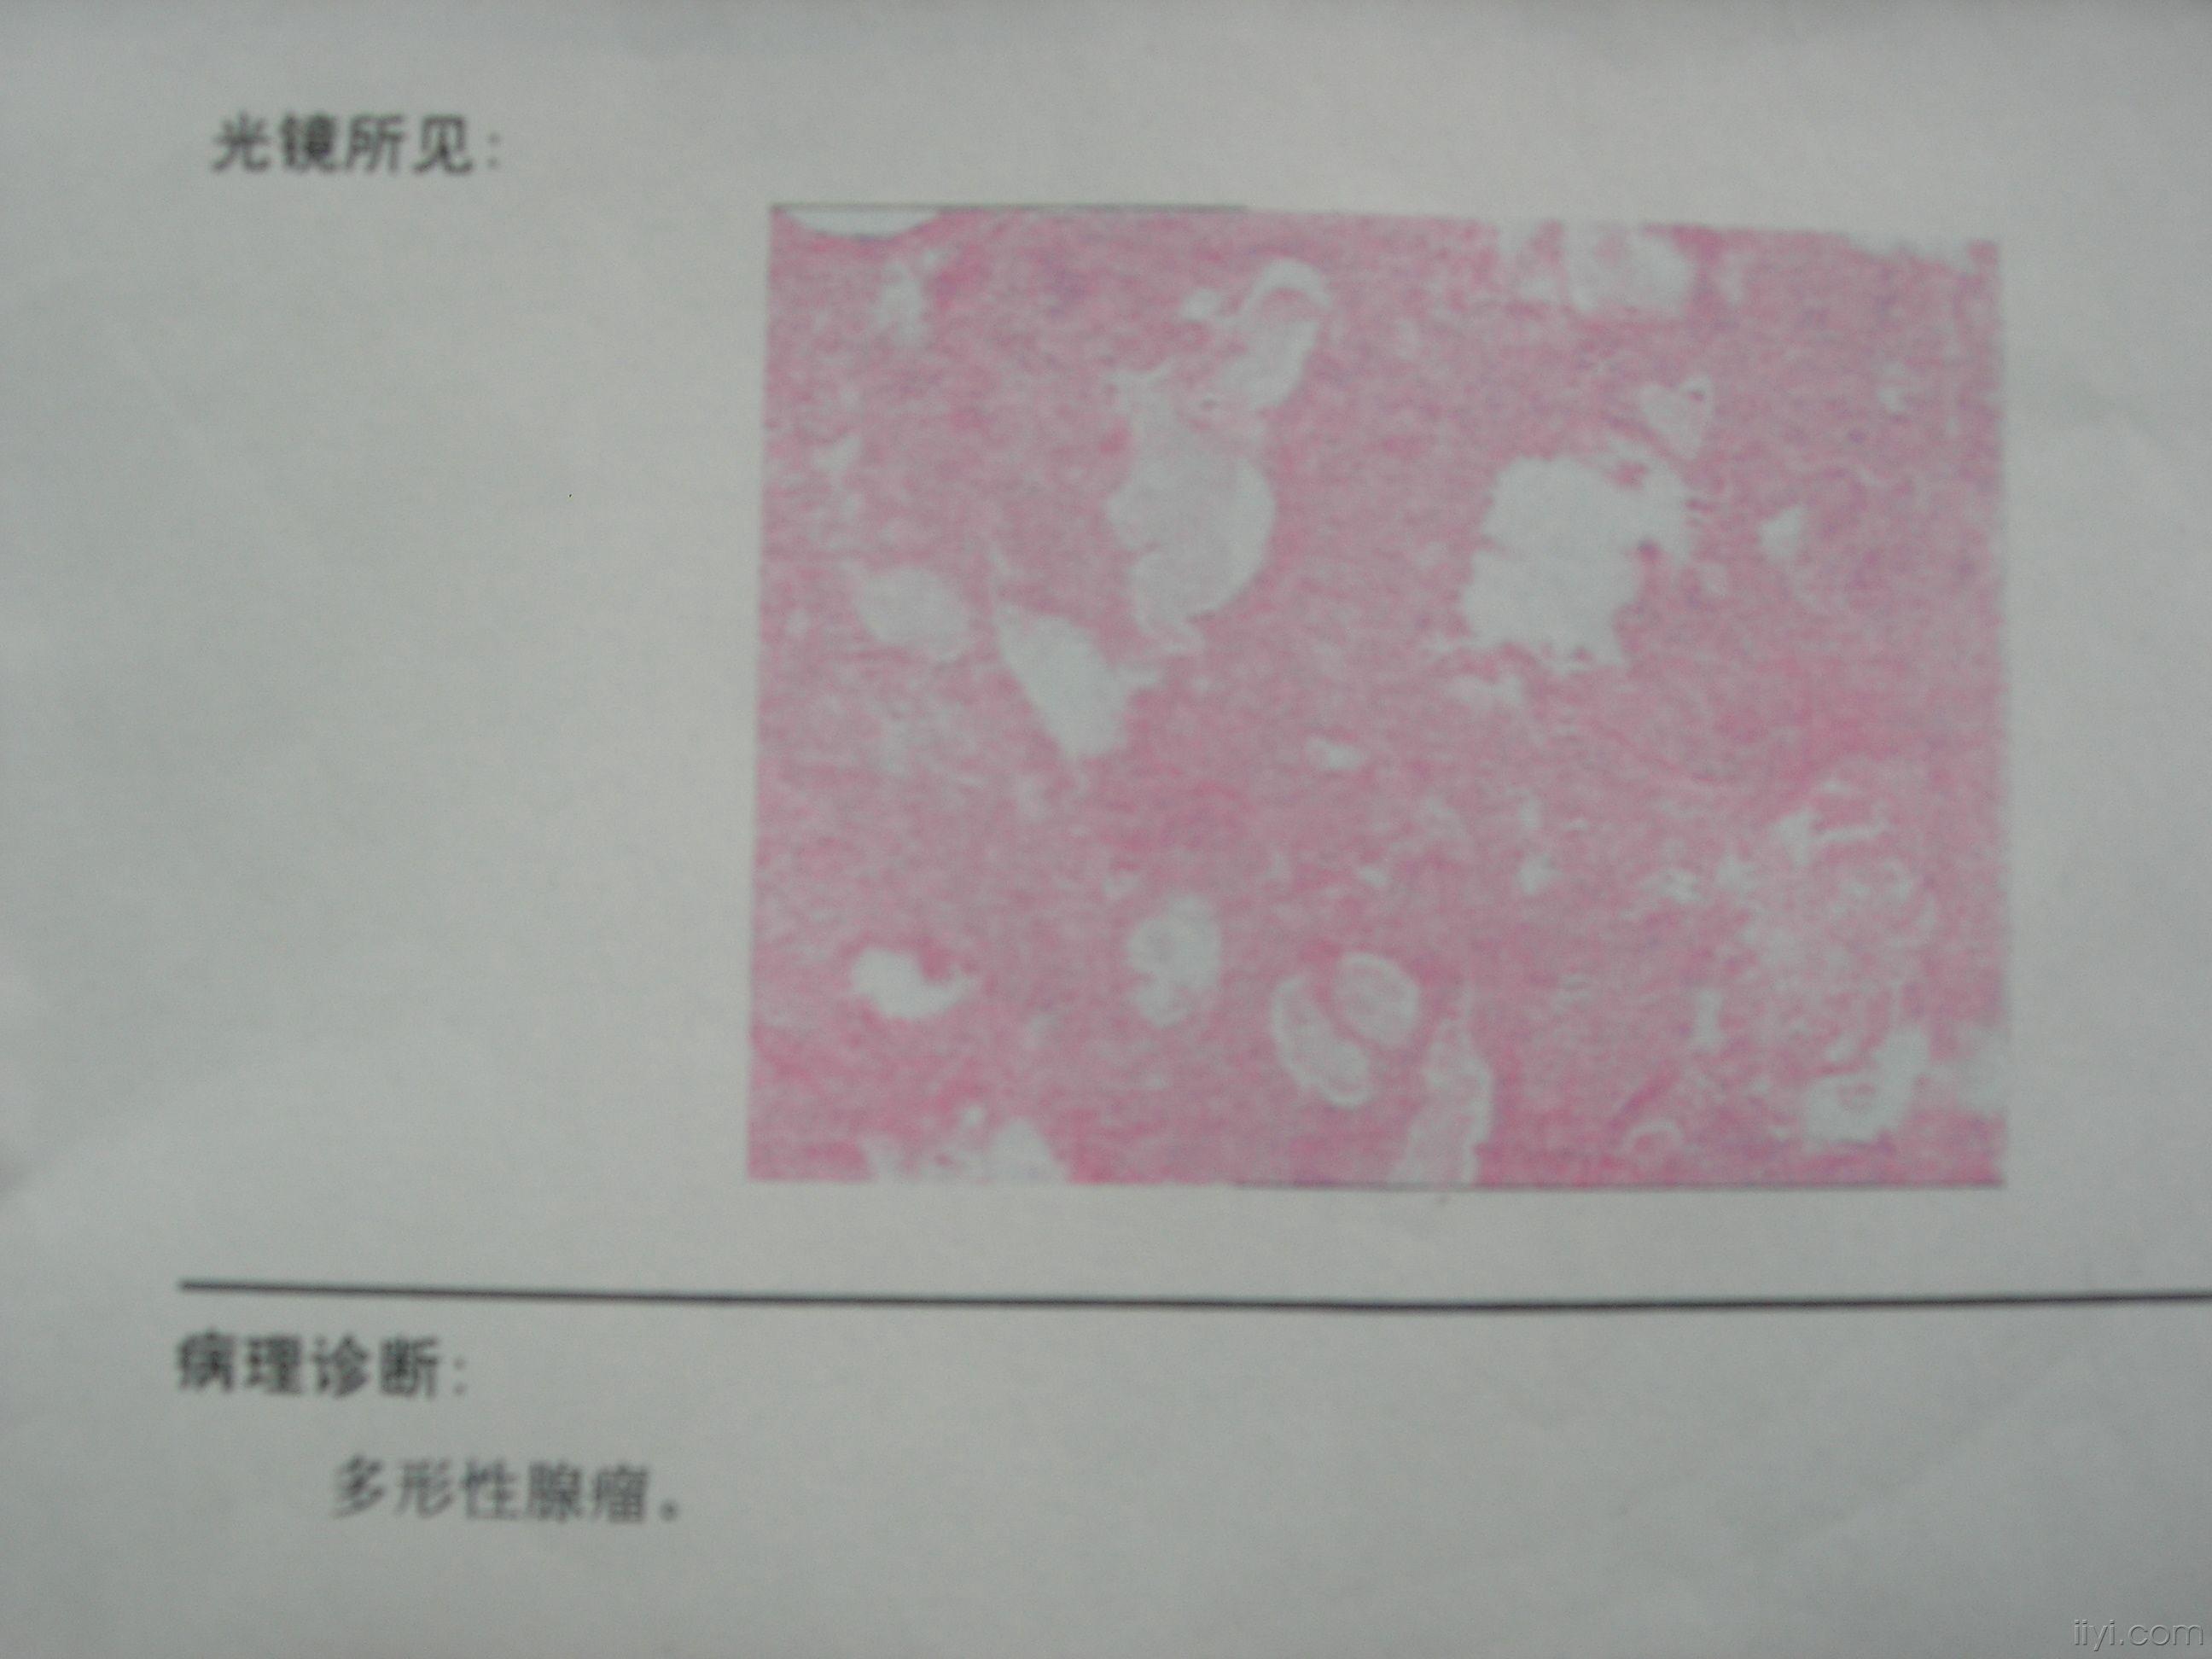 典型腮腺多形性腺瘤一例